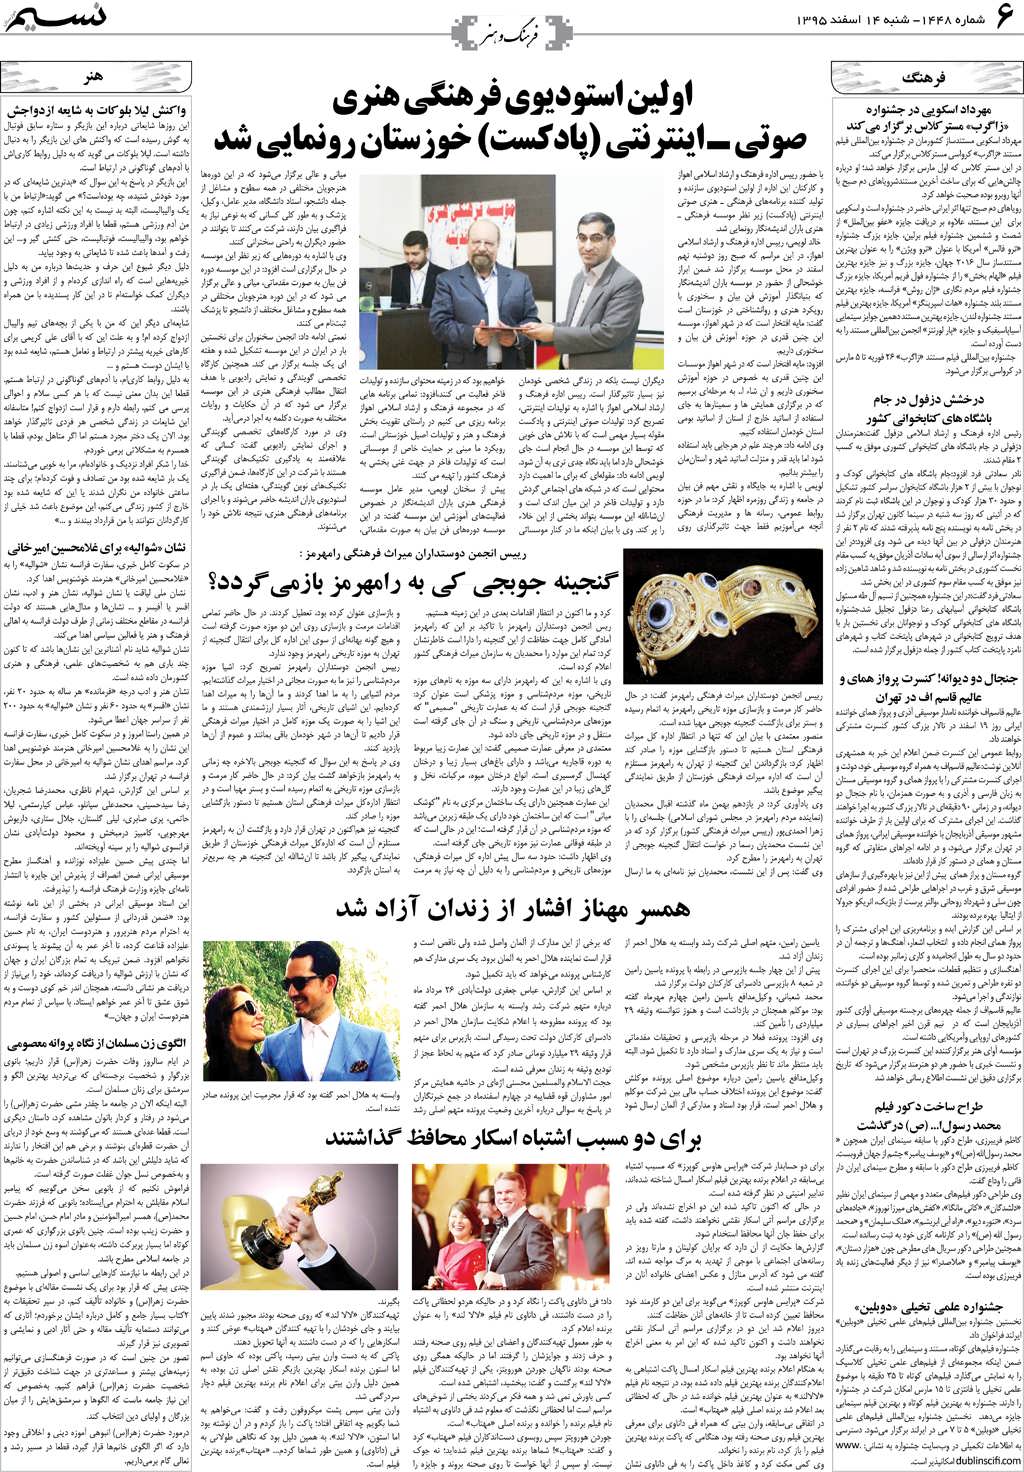 صفحه فرهنگ و هنر روزنامه نسیم شماره 1448